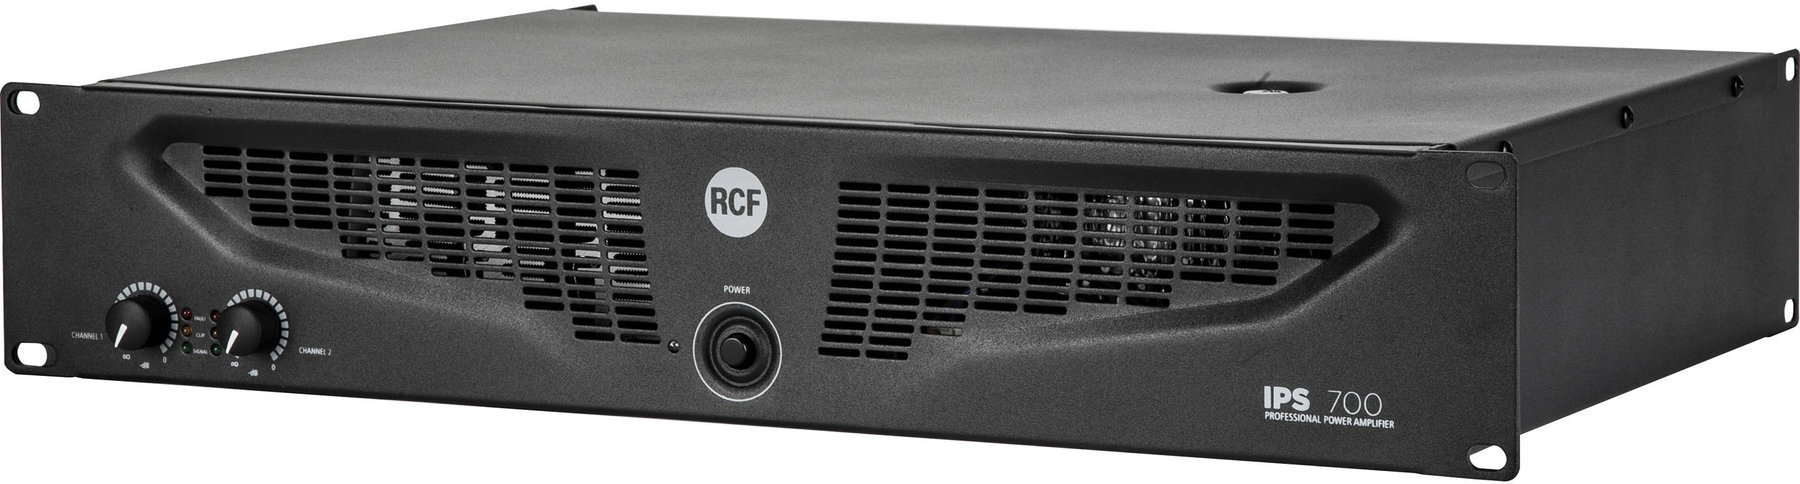 Amplificateurs de puissance RCF IPS 700 Amplificateurs de puissance